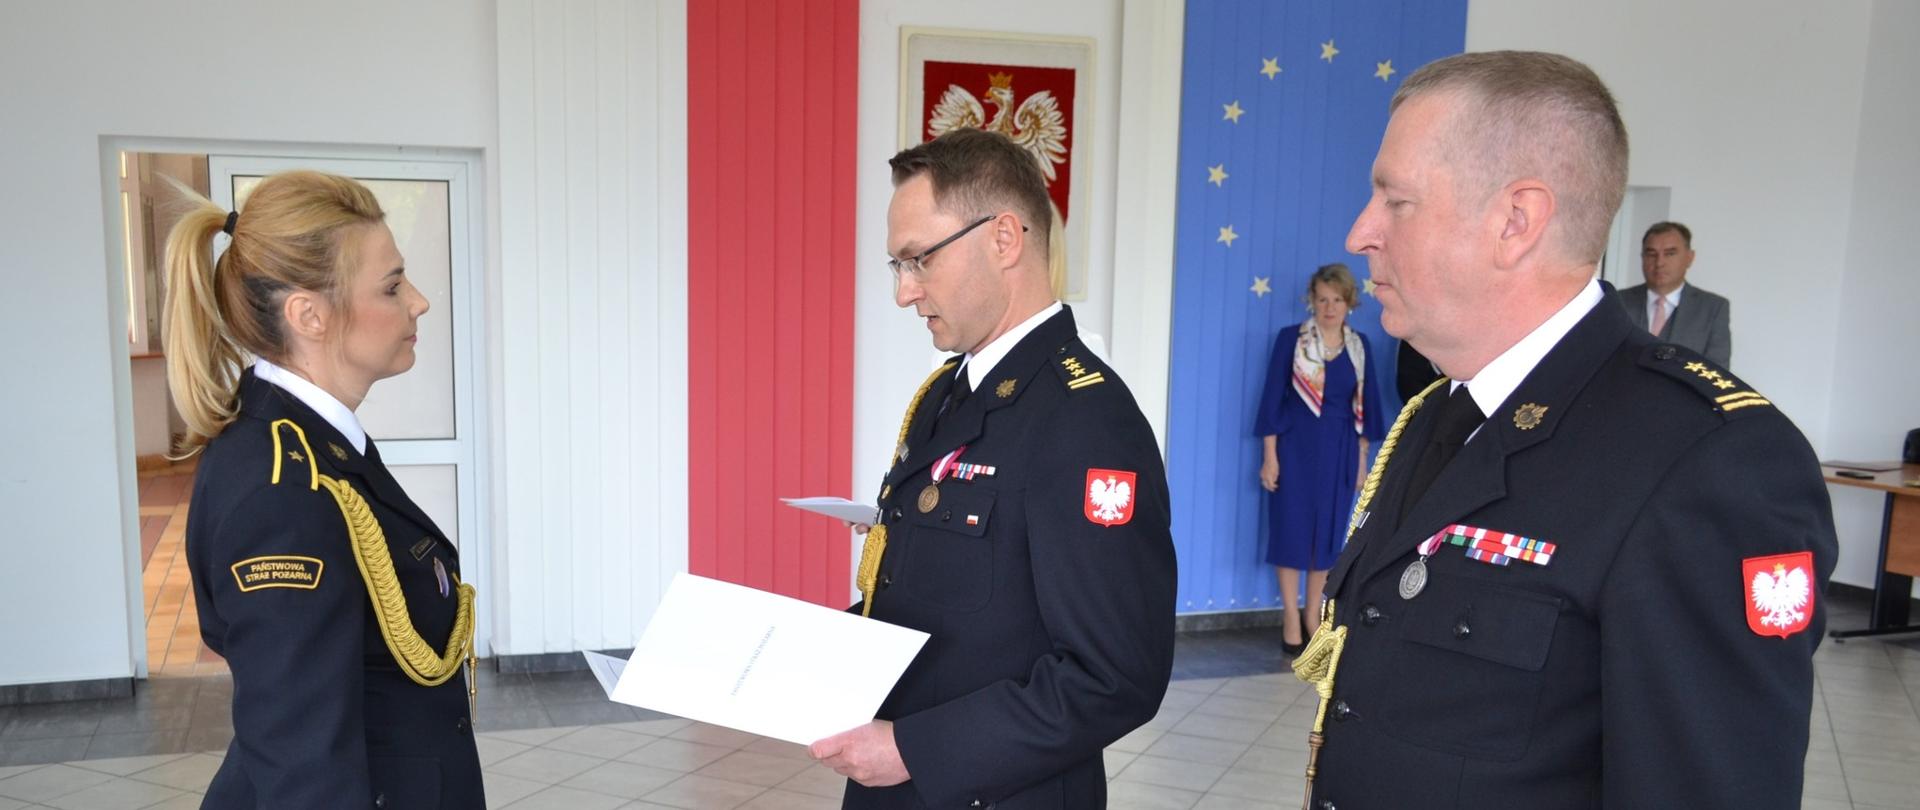 Z-ca komendanta wojewódzkiego gratuluje nagrodzonemu strażakowi 